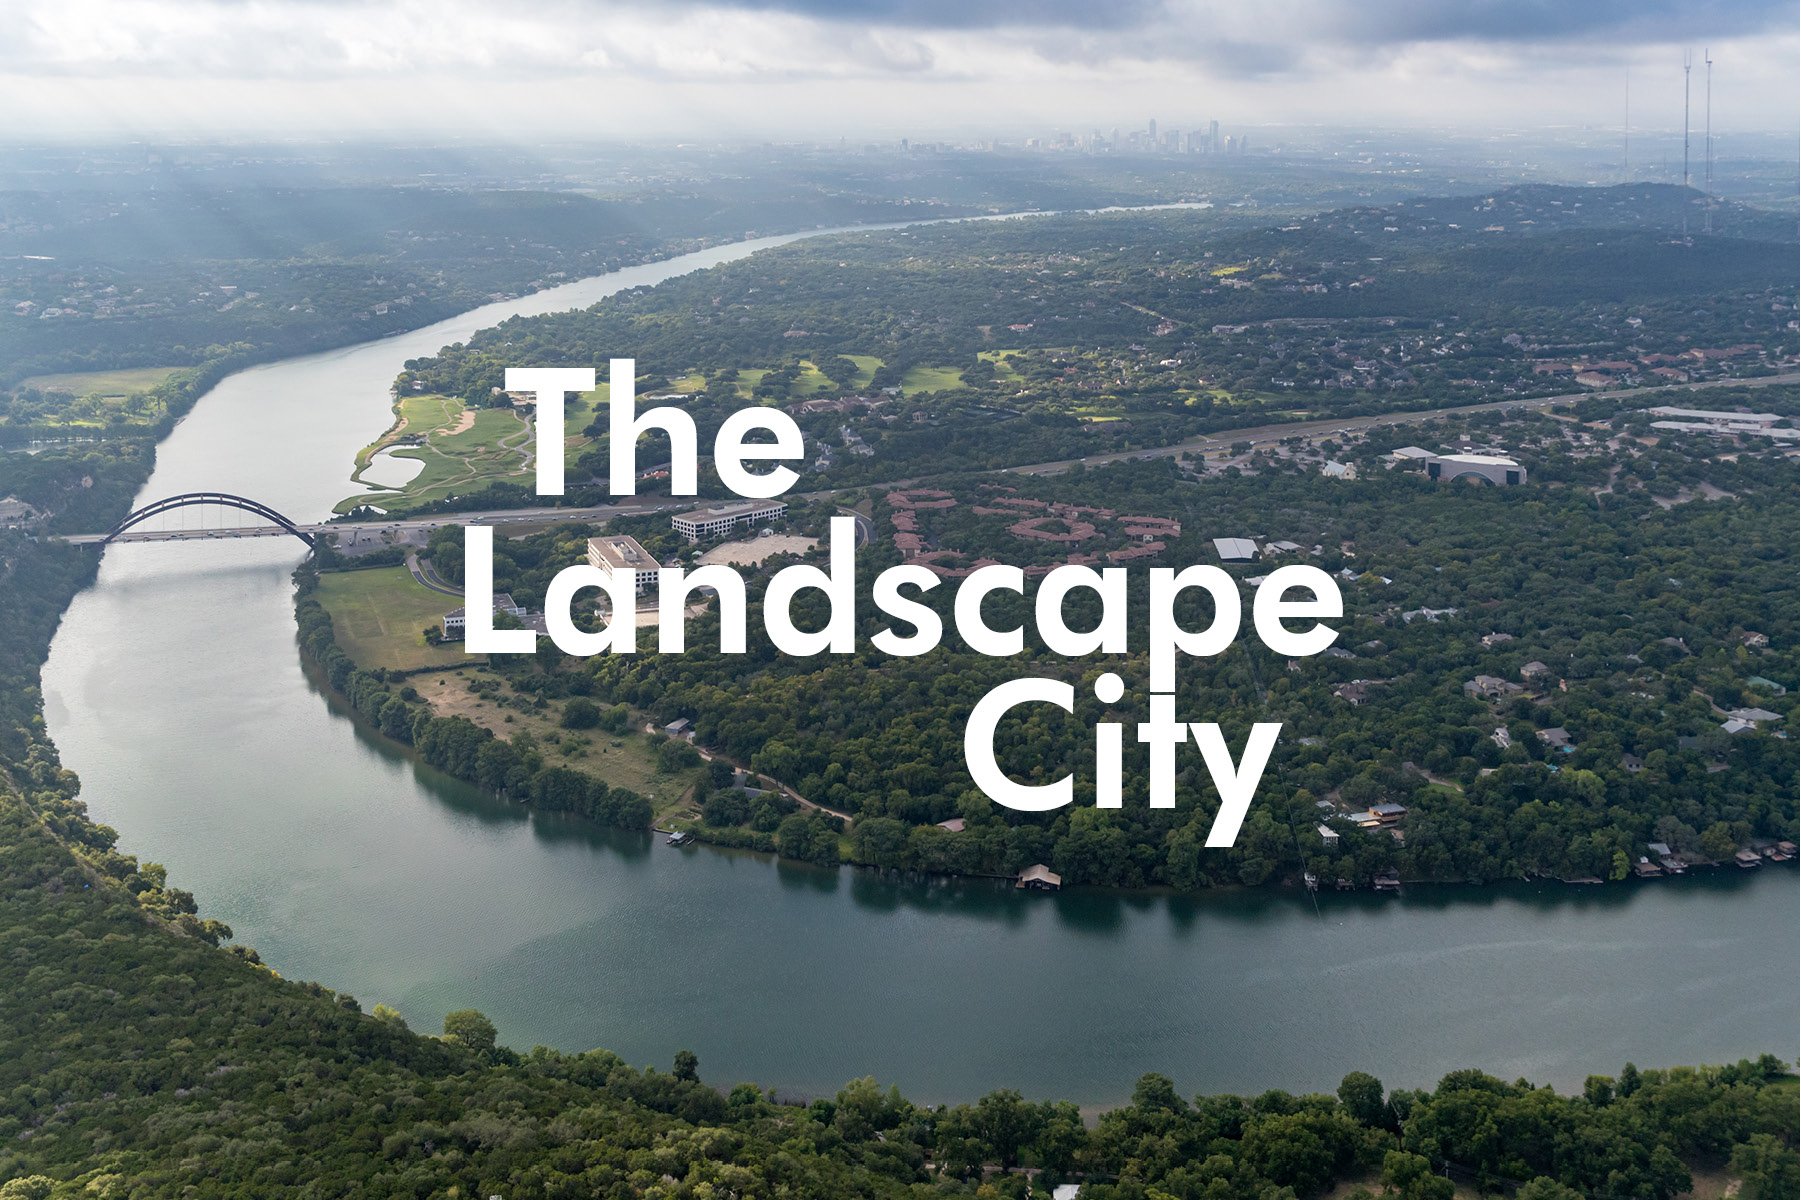 The Landscape City_Announcement 01.jpg